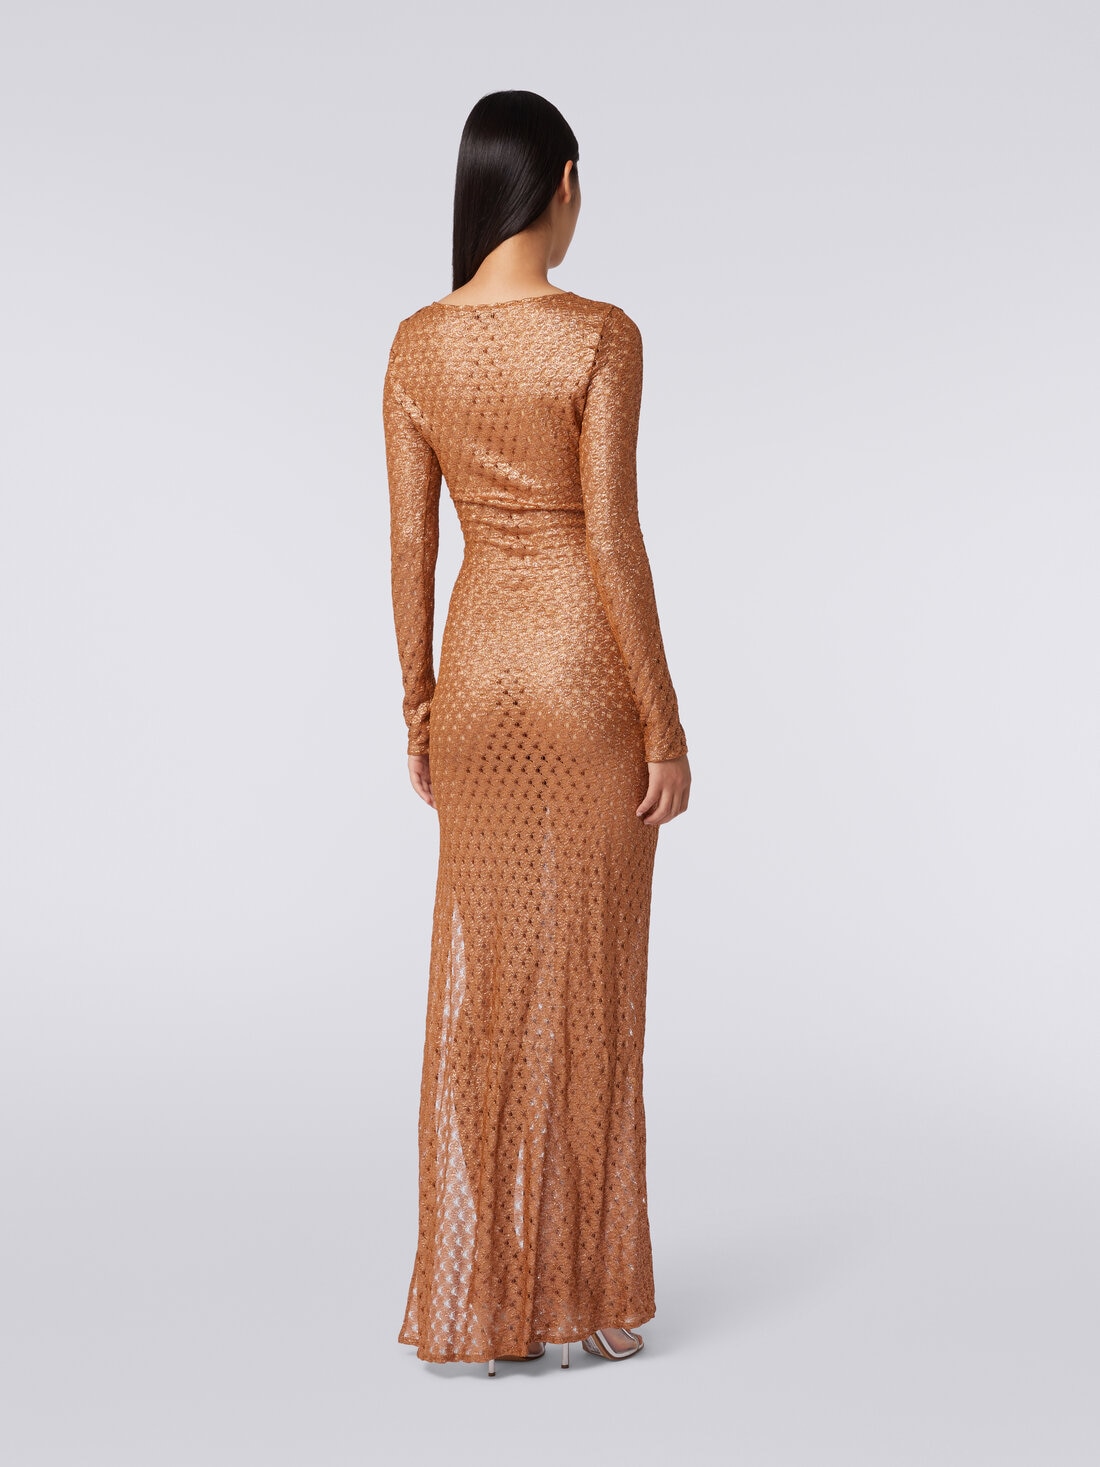 Langes Kleid in Spitzenoptik mit V-Ausschnitt und Applikationen, Braun - MS24SQ01BR00TC71052 - 3